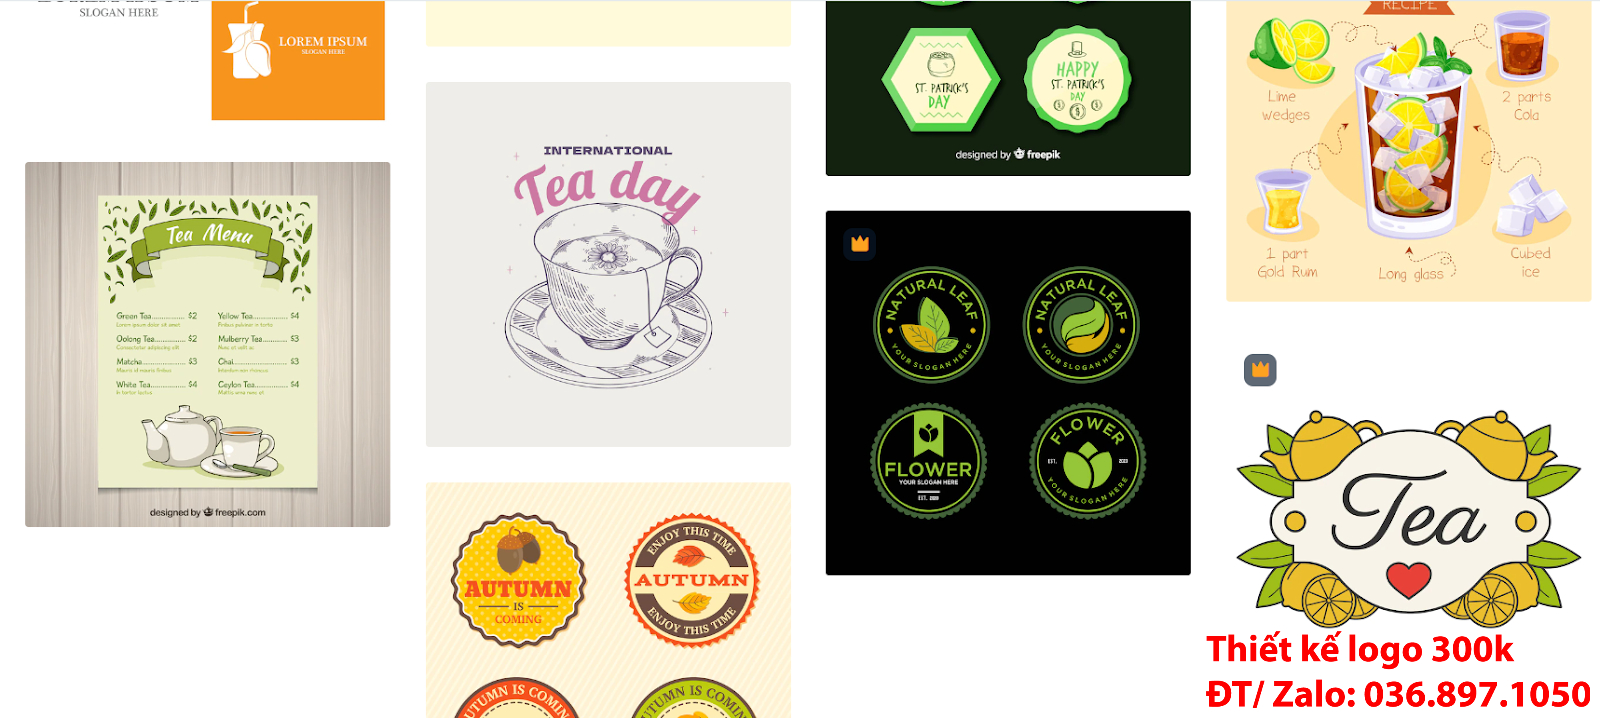 Công ty Tạo logo quán trà chanh sang trọng khác biệt đẹp online uy tín chuyên nghiệp tại Hà Nội